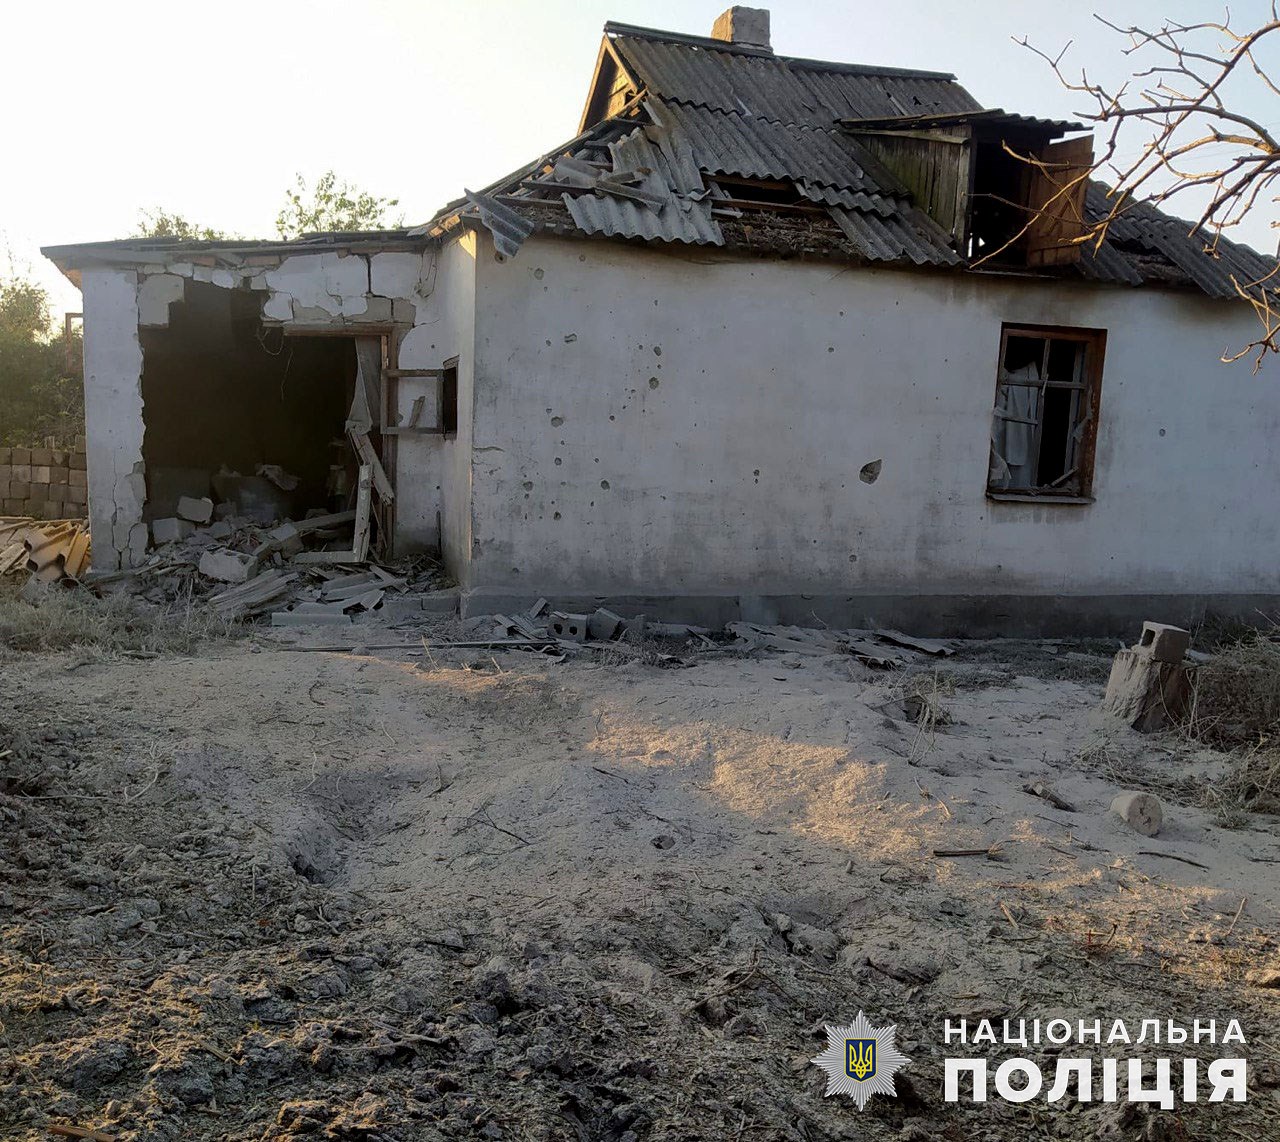 Приватний будинок, який зруйнували росіяни 28 серпня